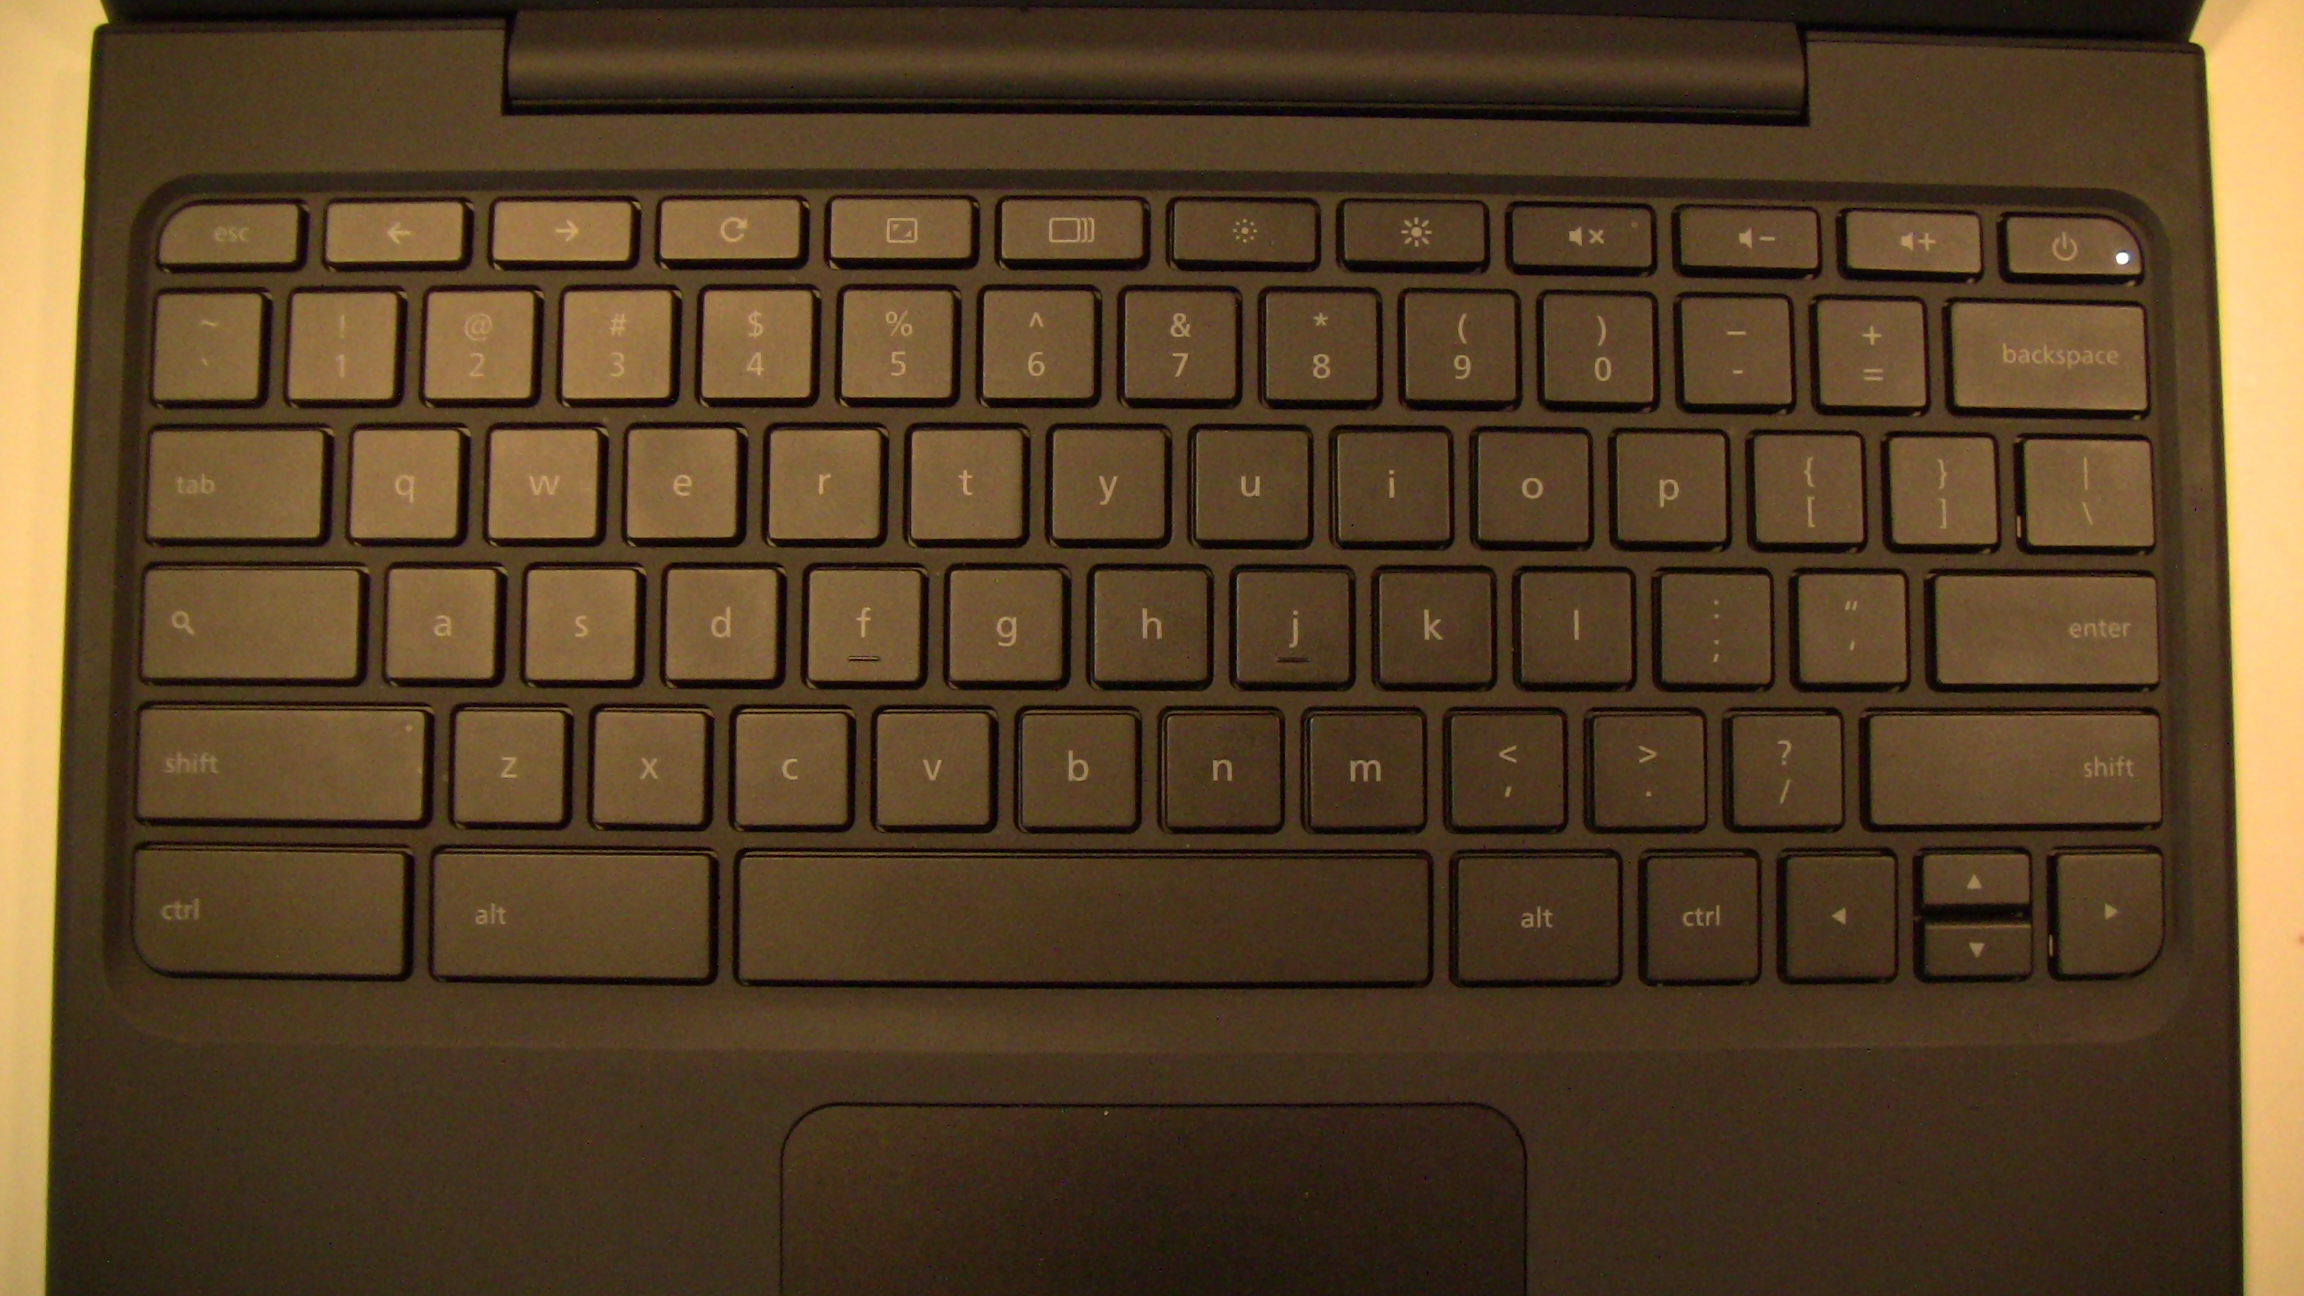 Cr-48 Keyboard